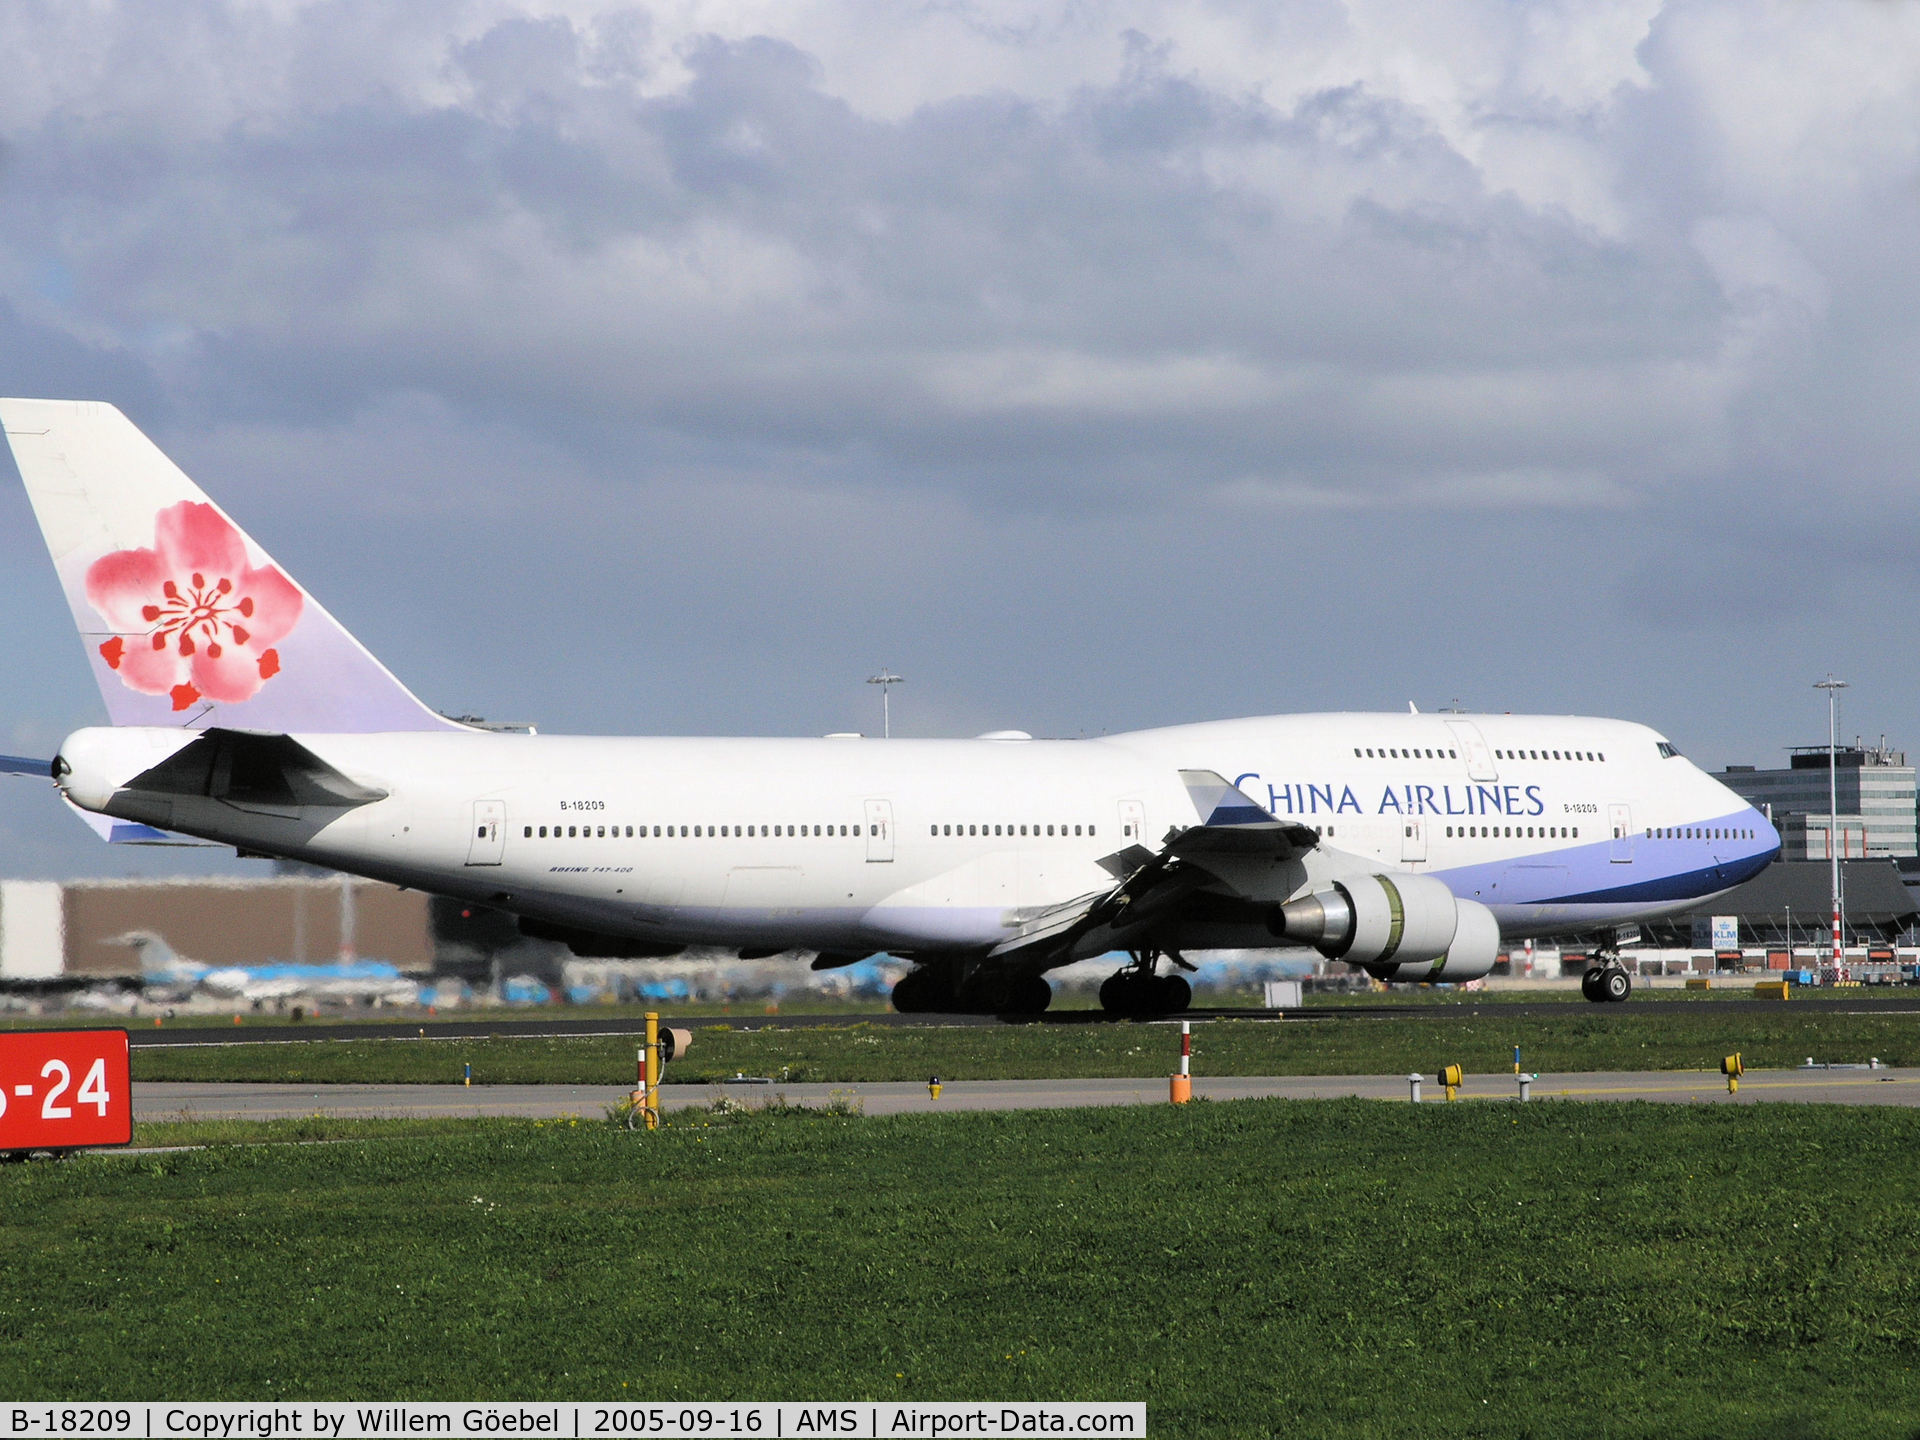 B-18209, 1999 Boeing 747-409 C/N 29906, Landing on runway 06 of Schiphol Airport